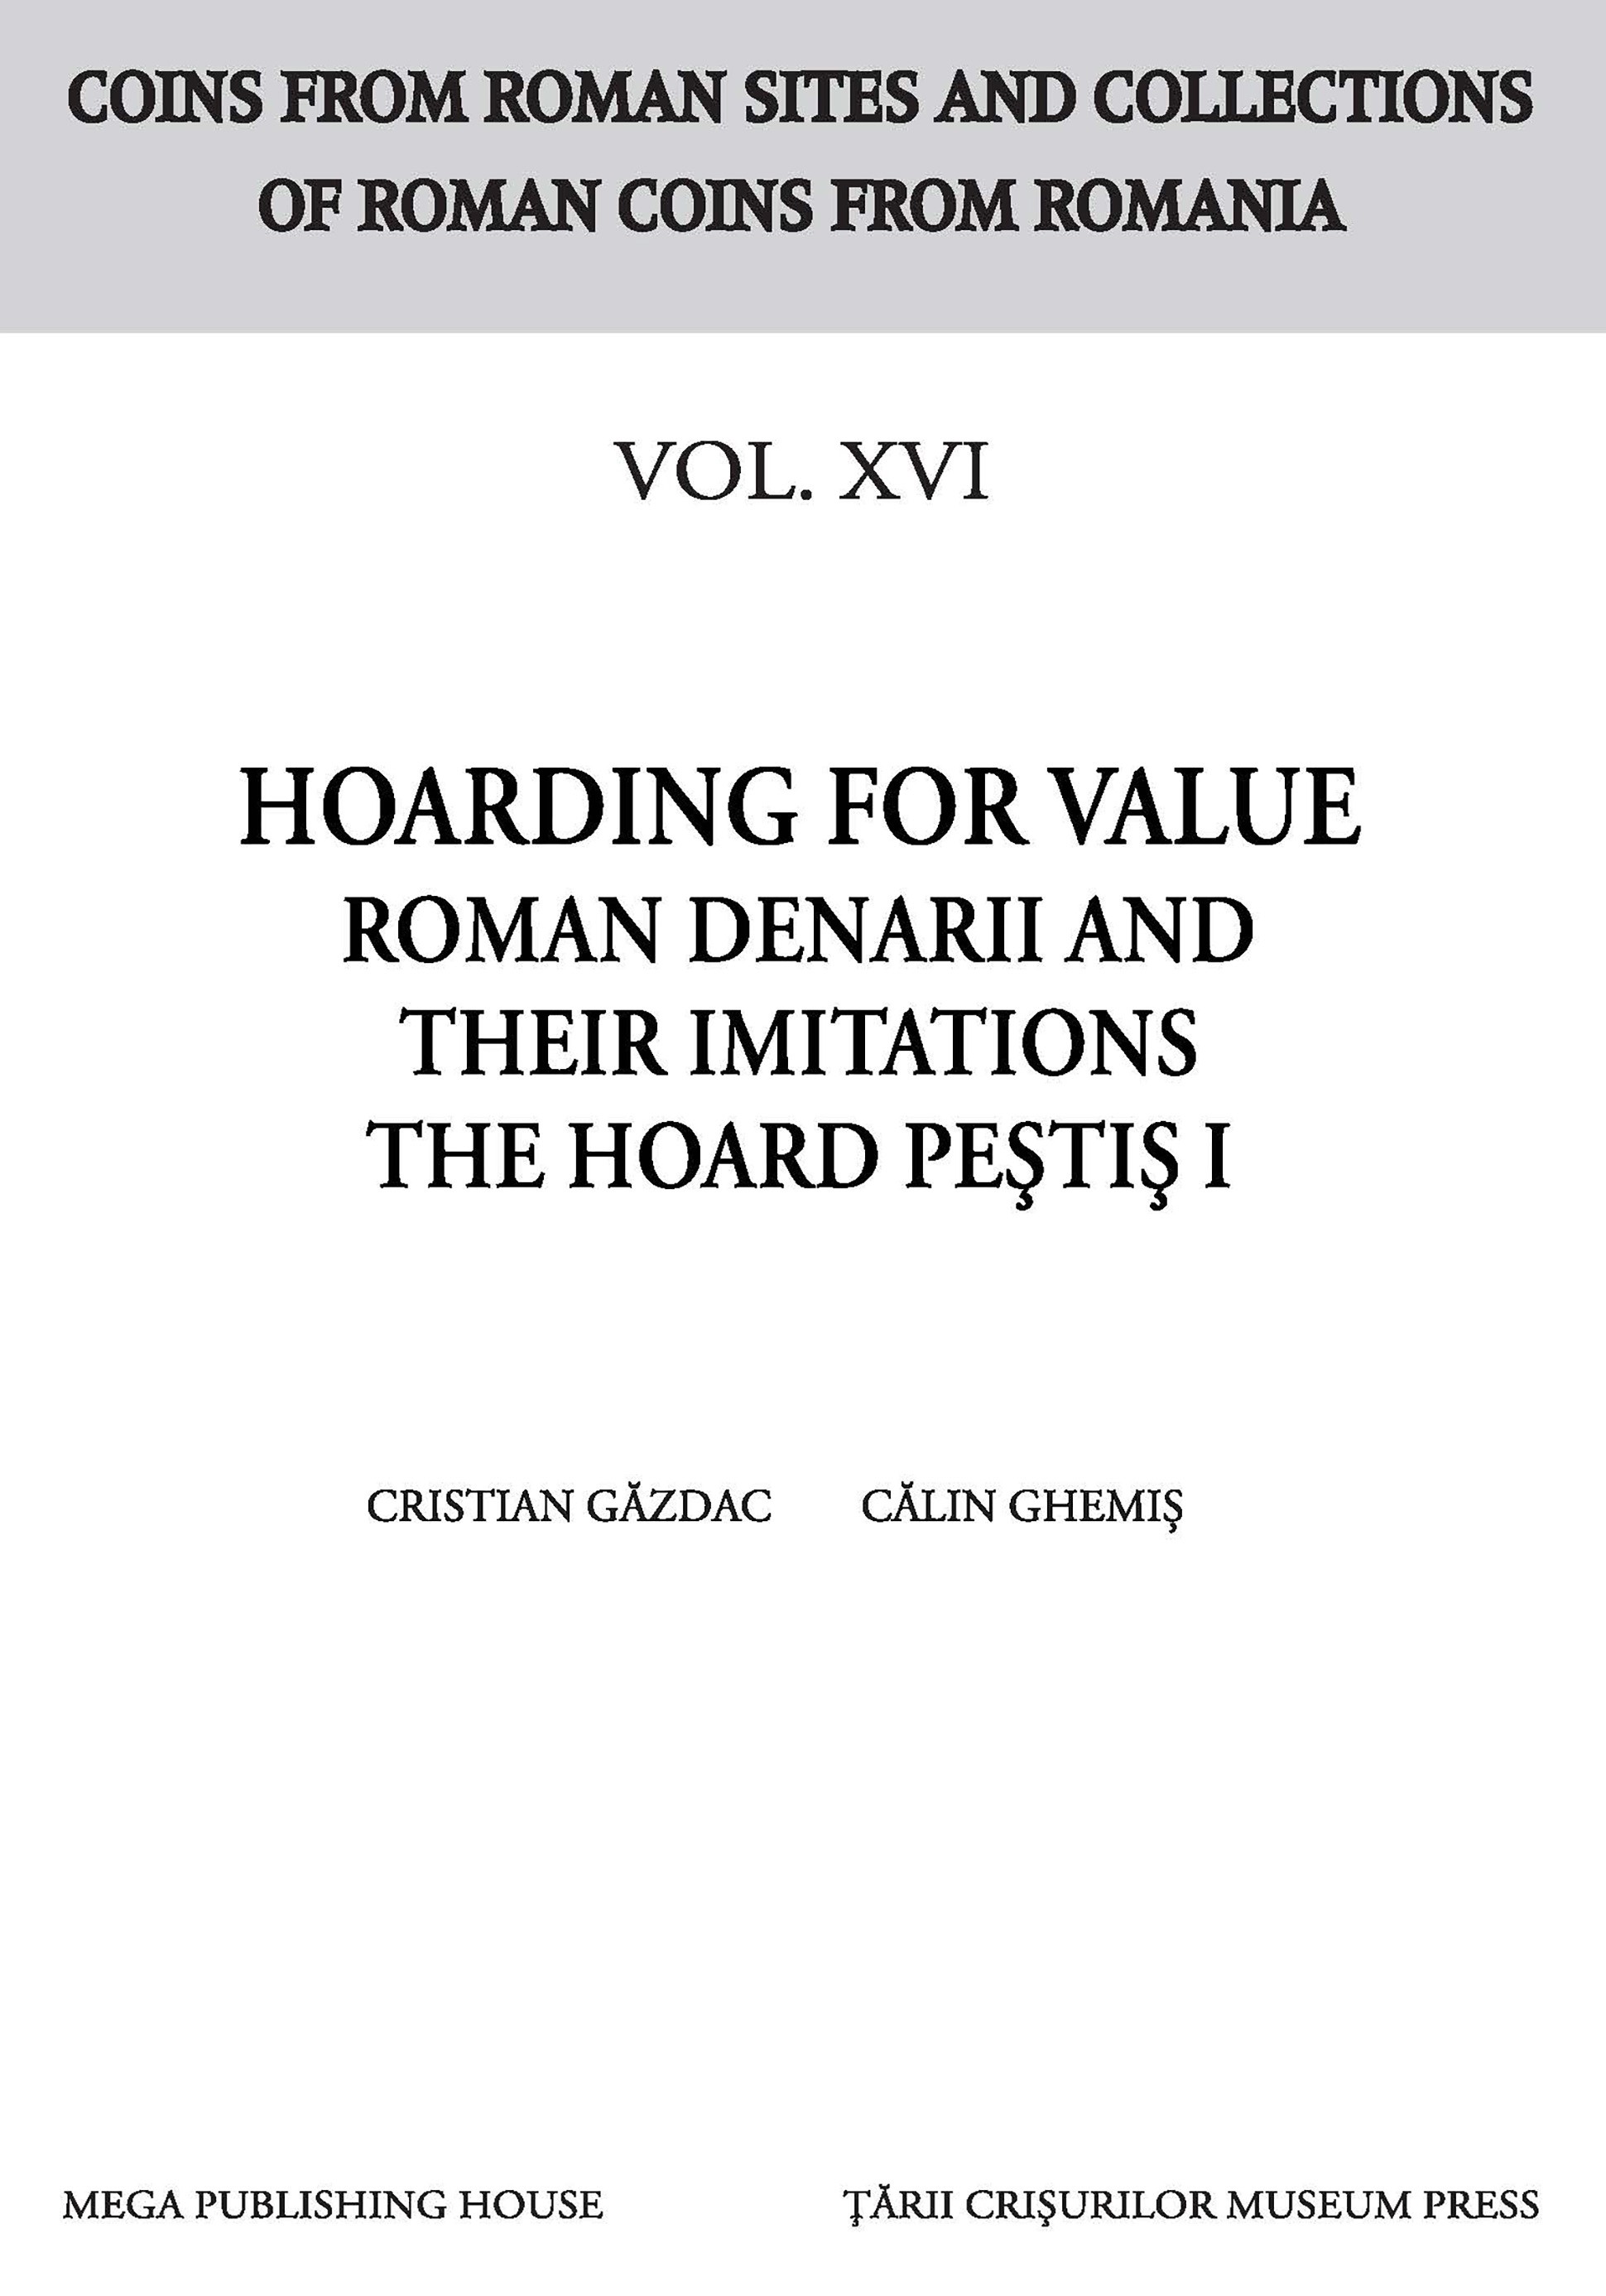 Găzdac, Cristian – Călin Ghemiș : Hoarding for Value. Roman Denarii and their imitations: The Hoard Peștiș I